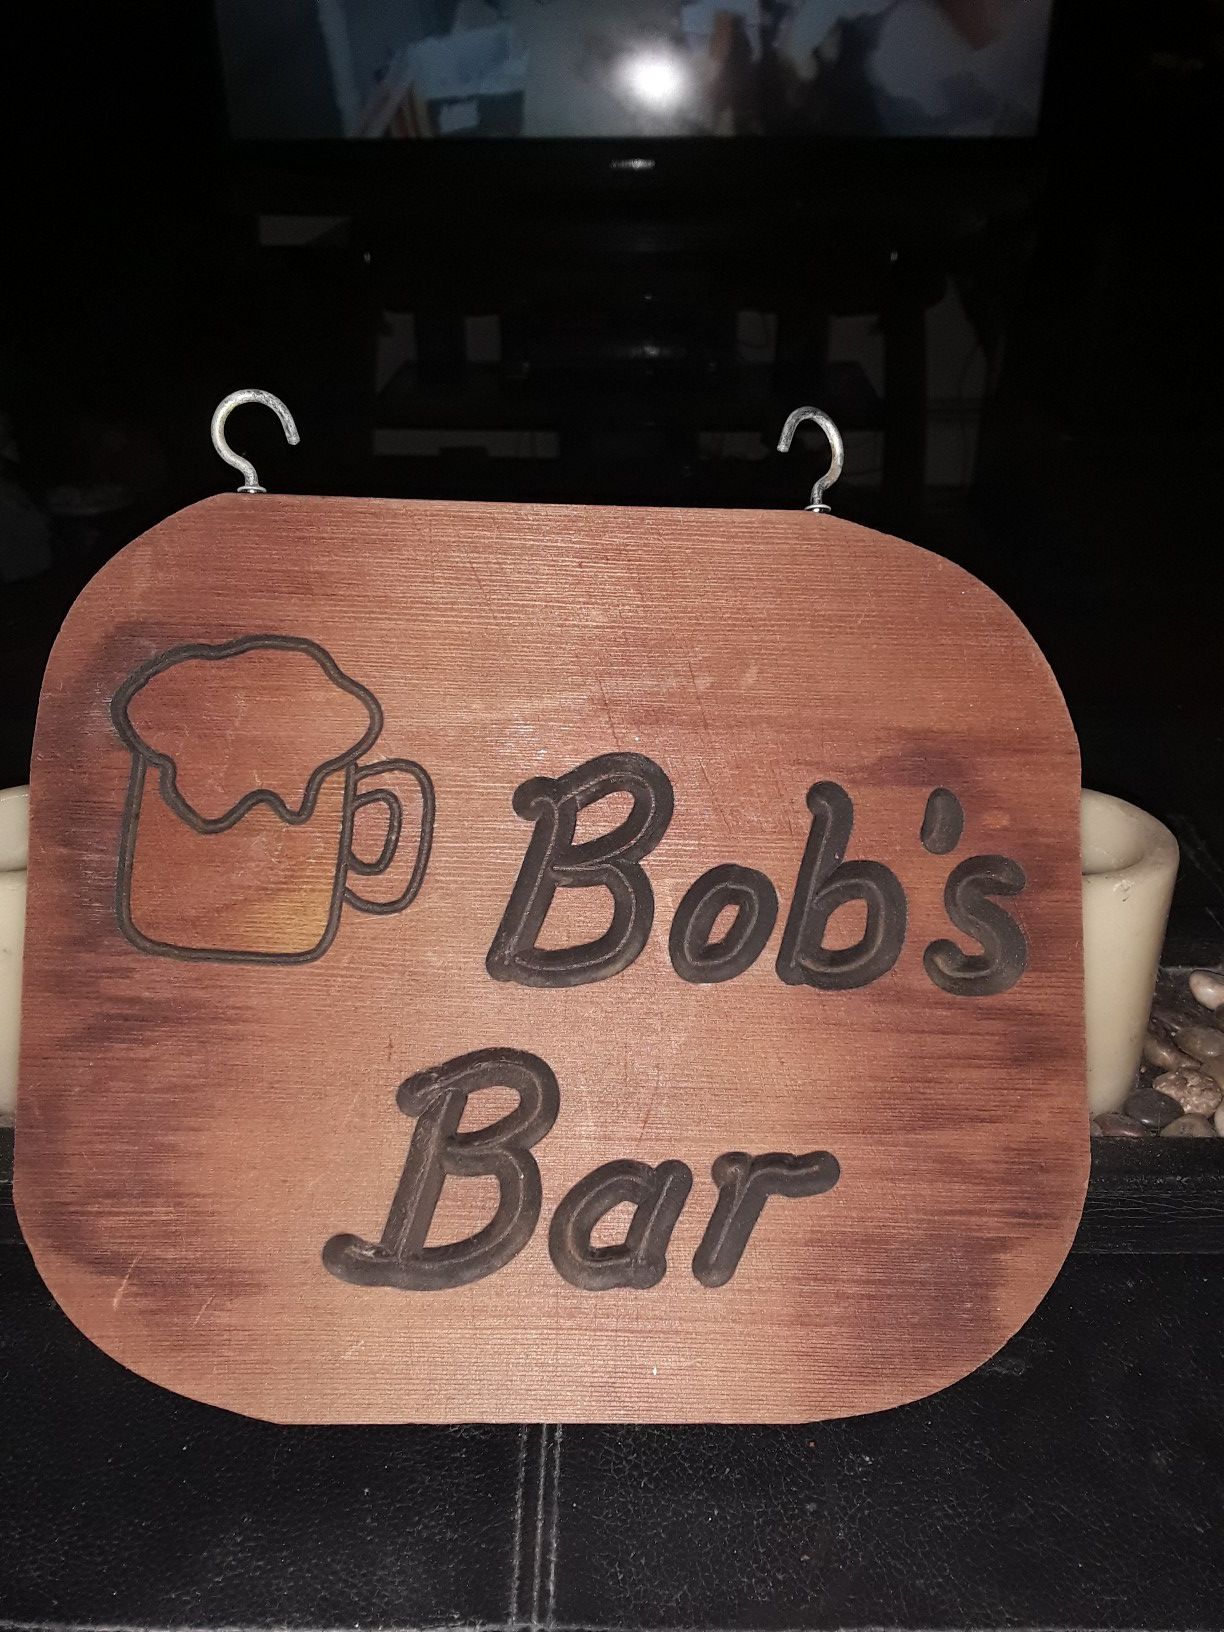 Nice Christmas gift Bob's Bar wooden sign never used